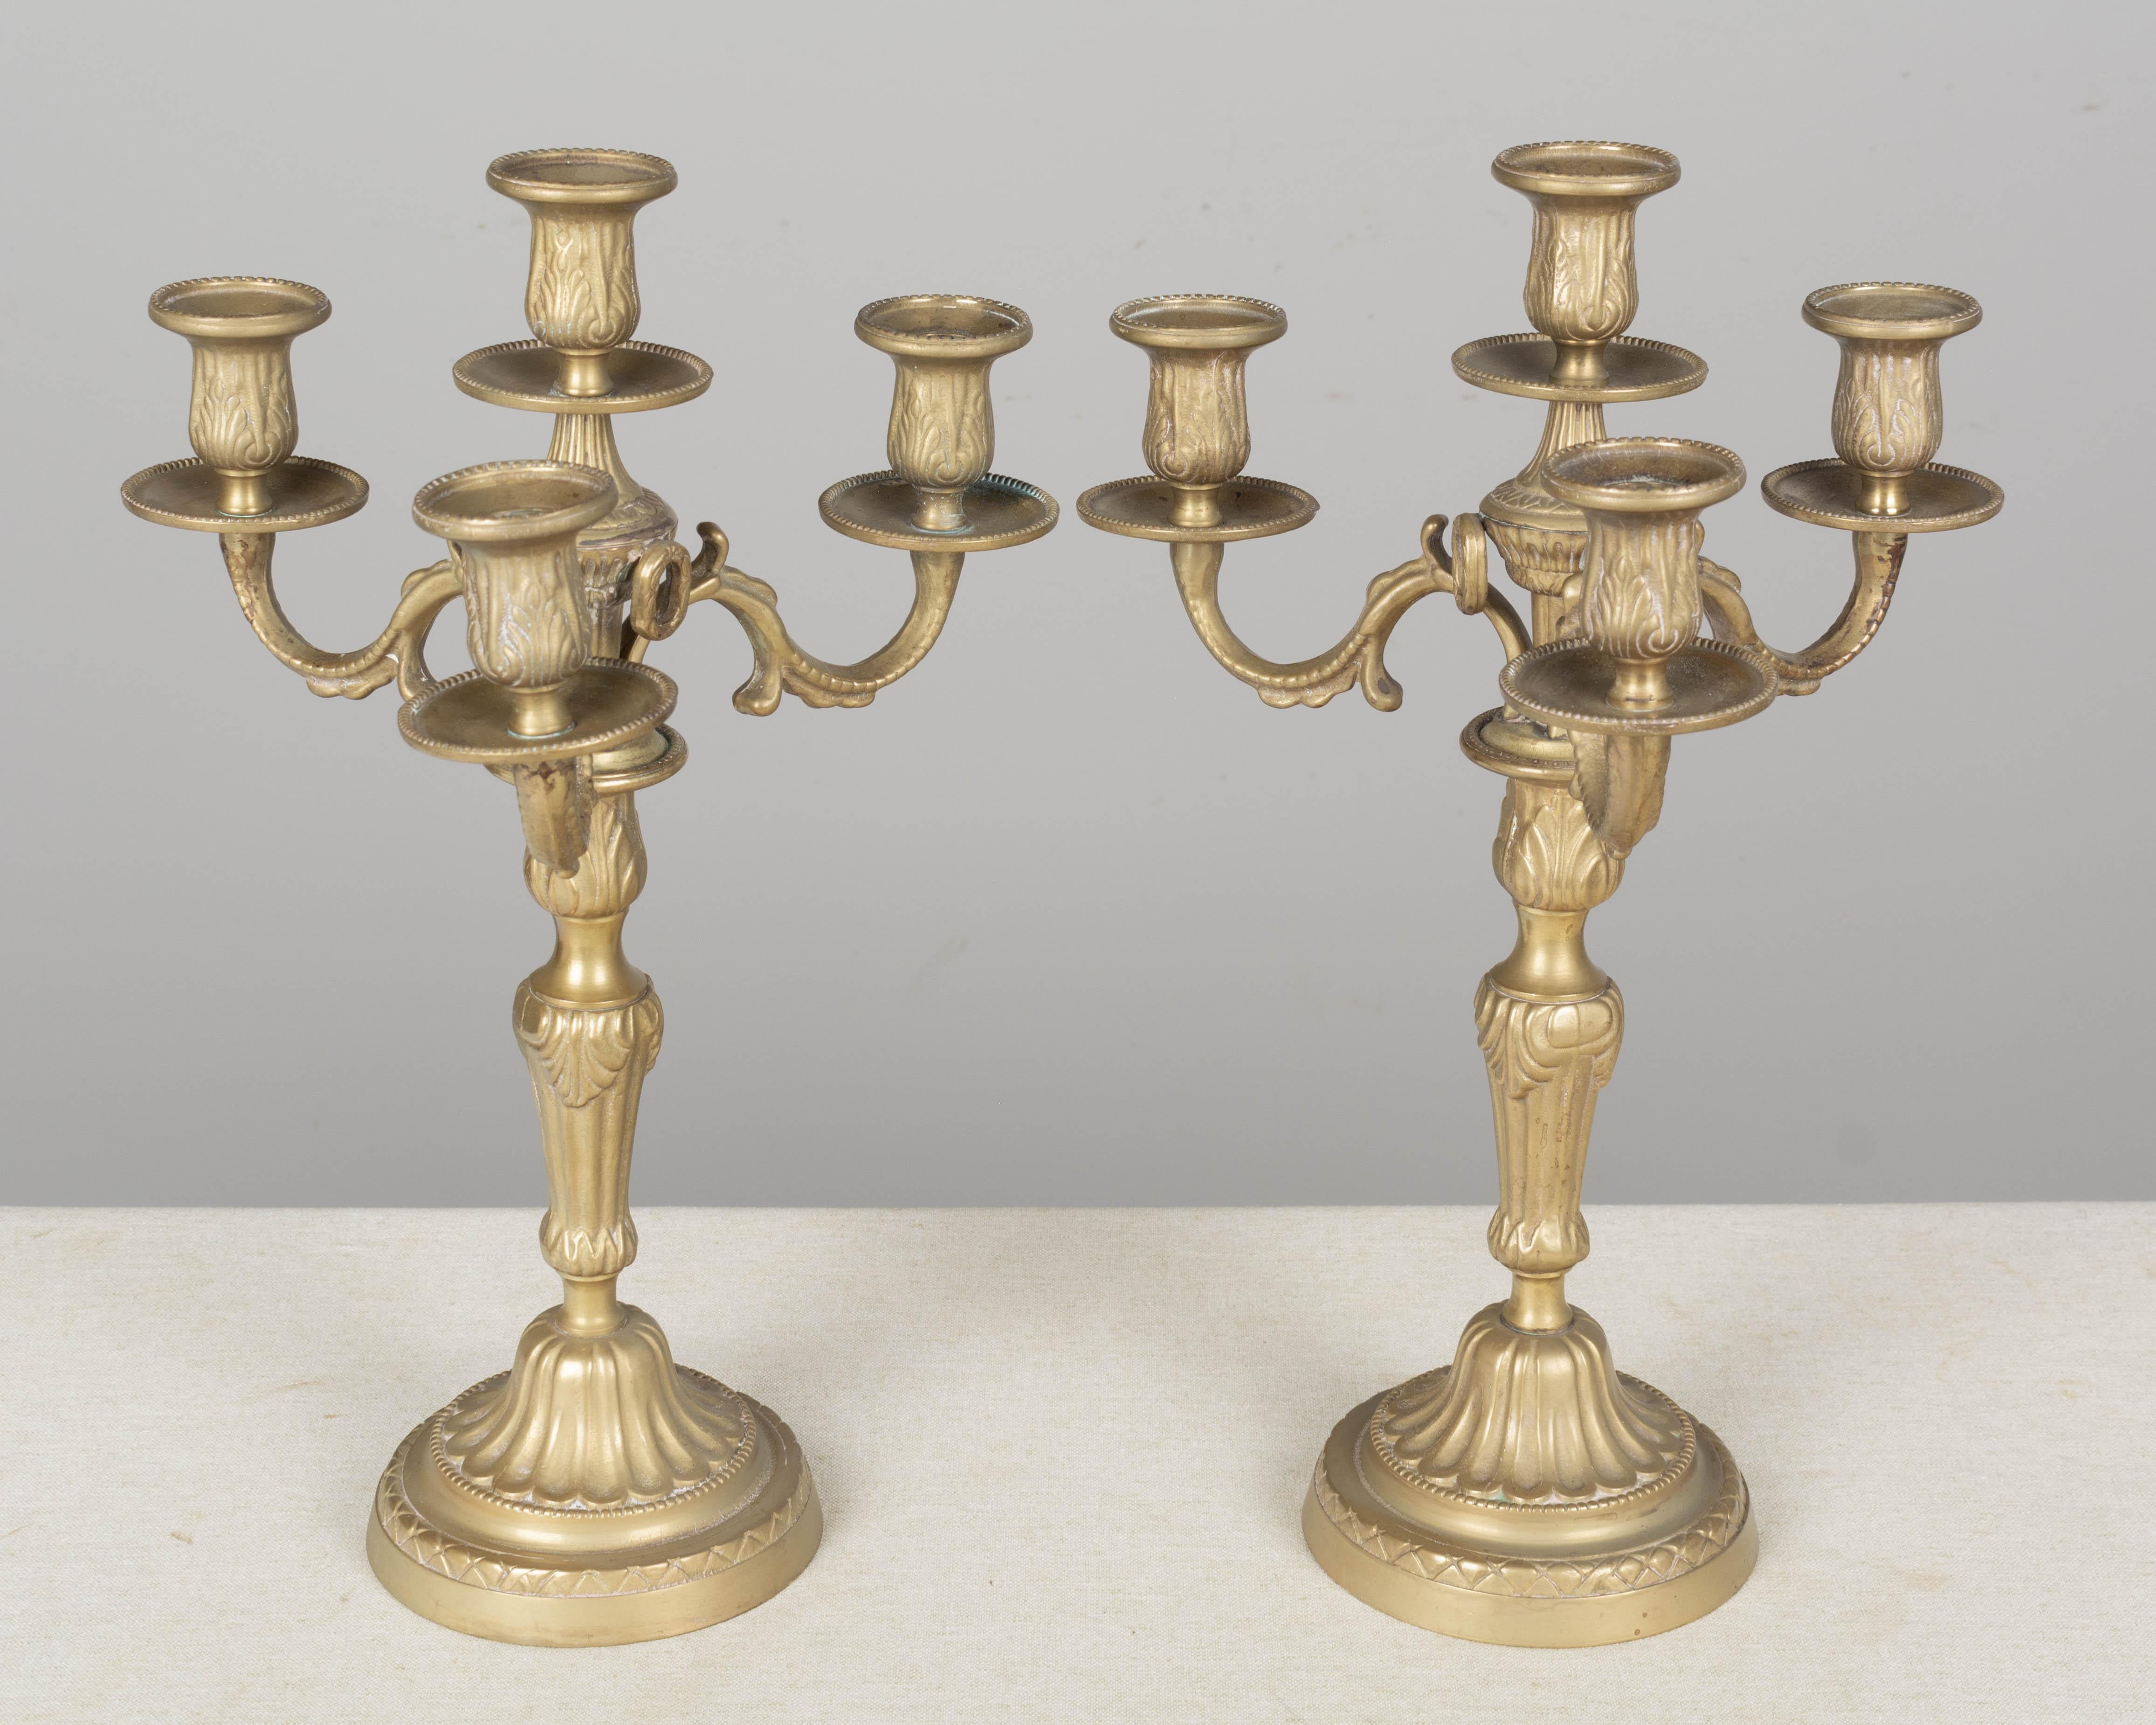 Ein Paar französische Messingkandelaber im Louis XV-Stil mit vier Kerzenschalen und schönen Gussdetails.
Maße: 25.75